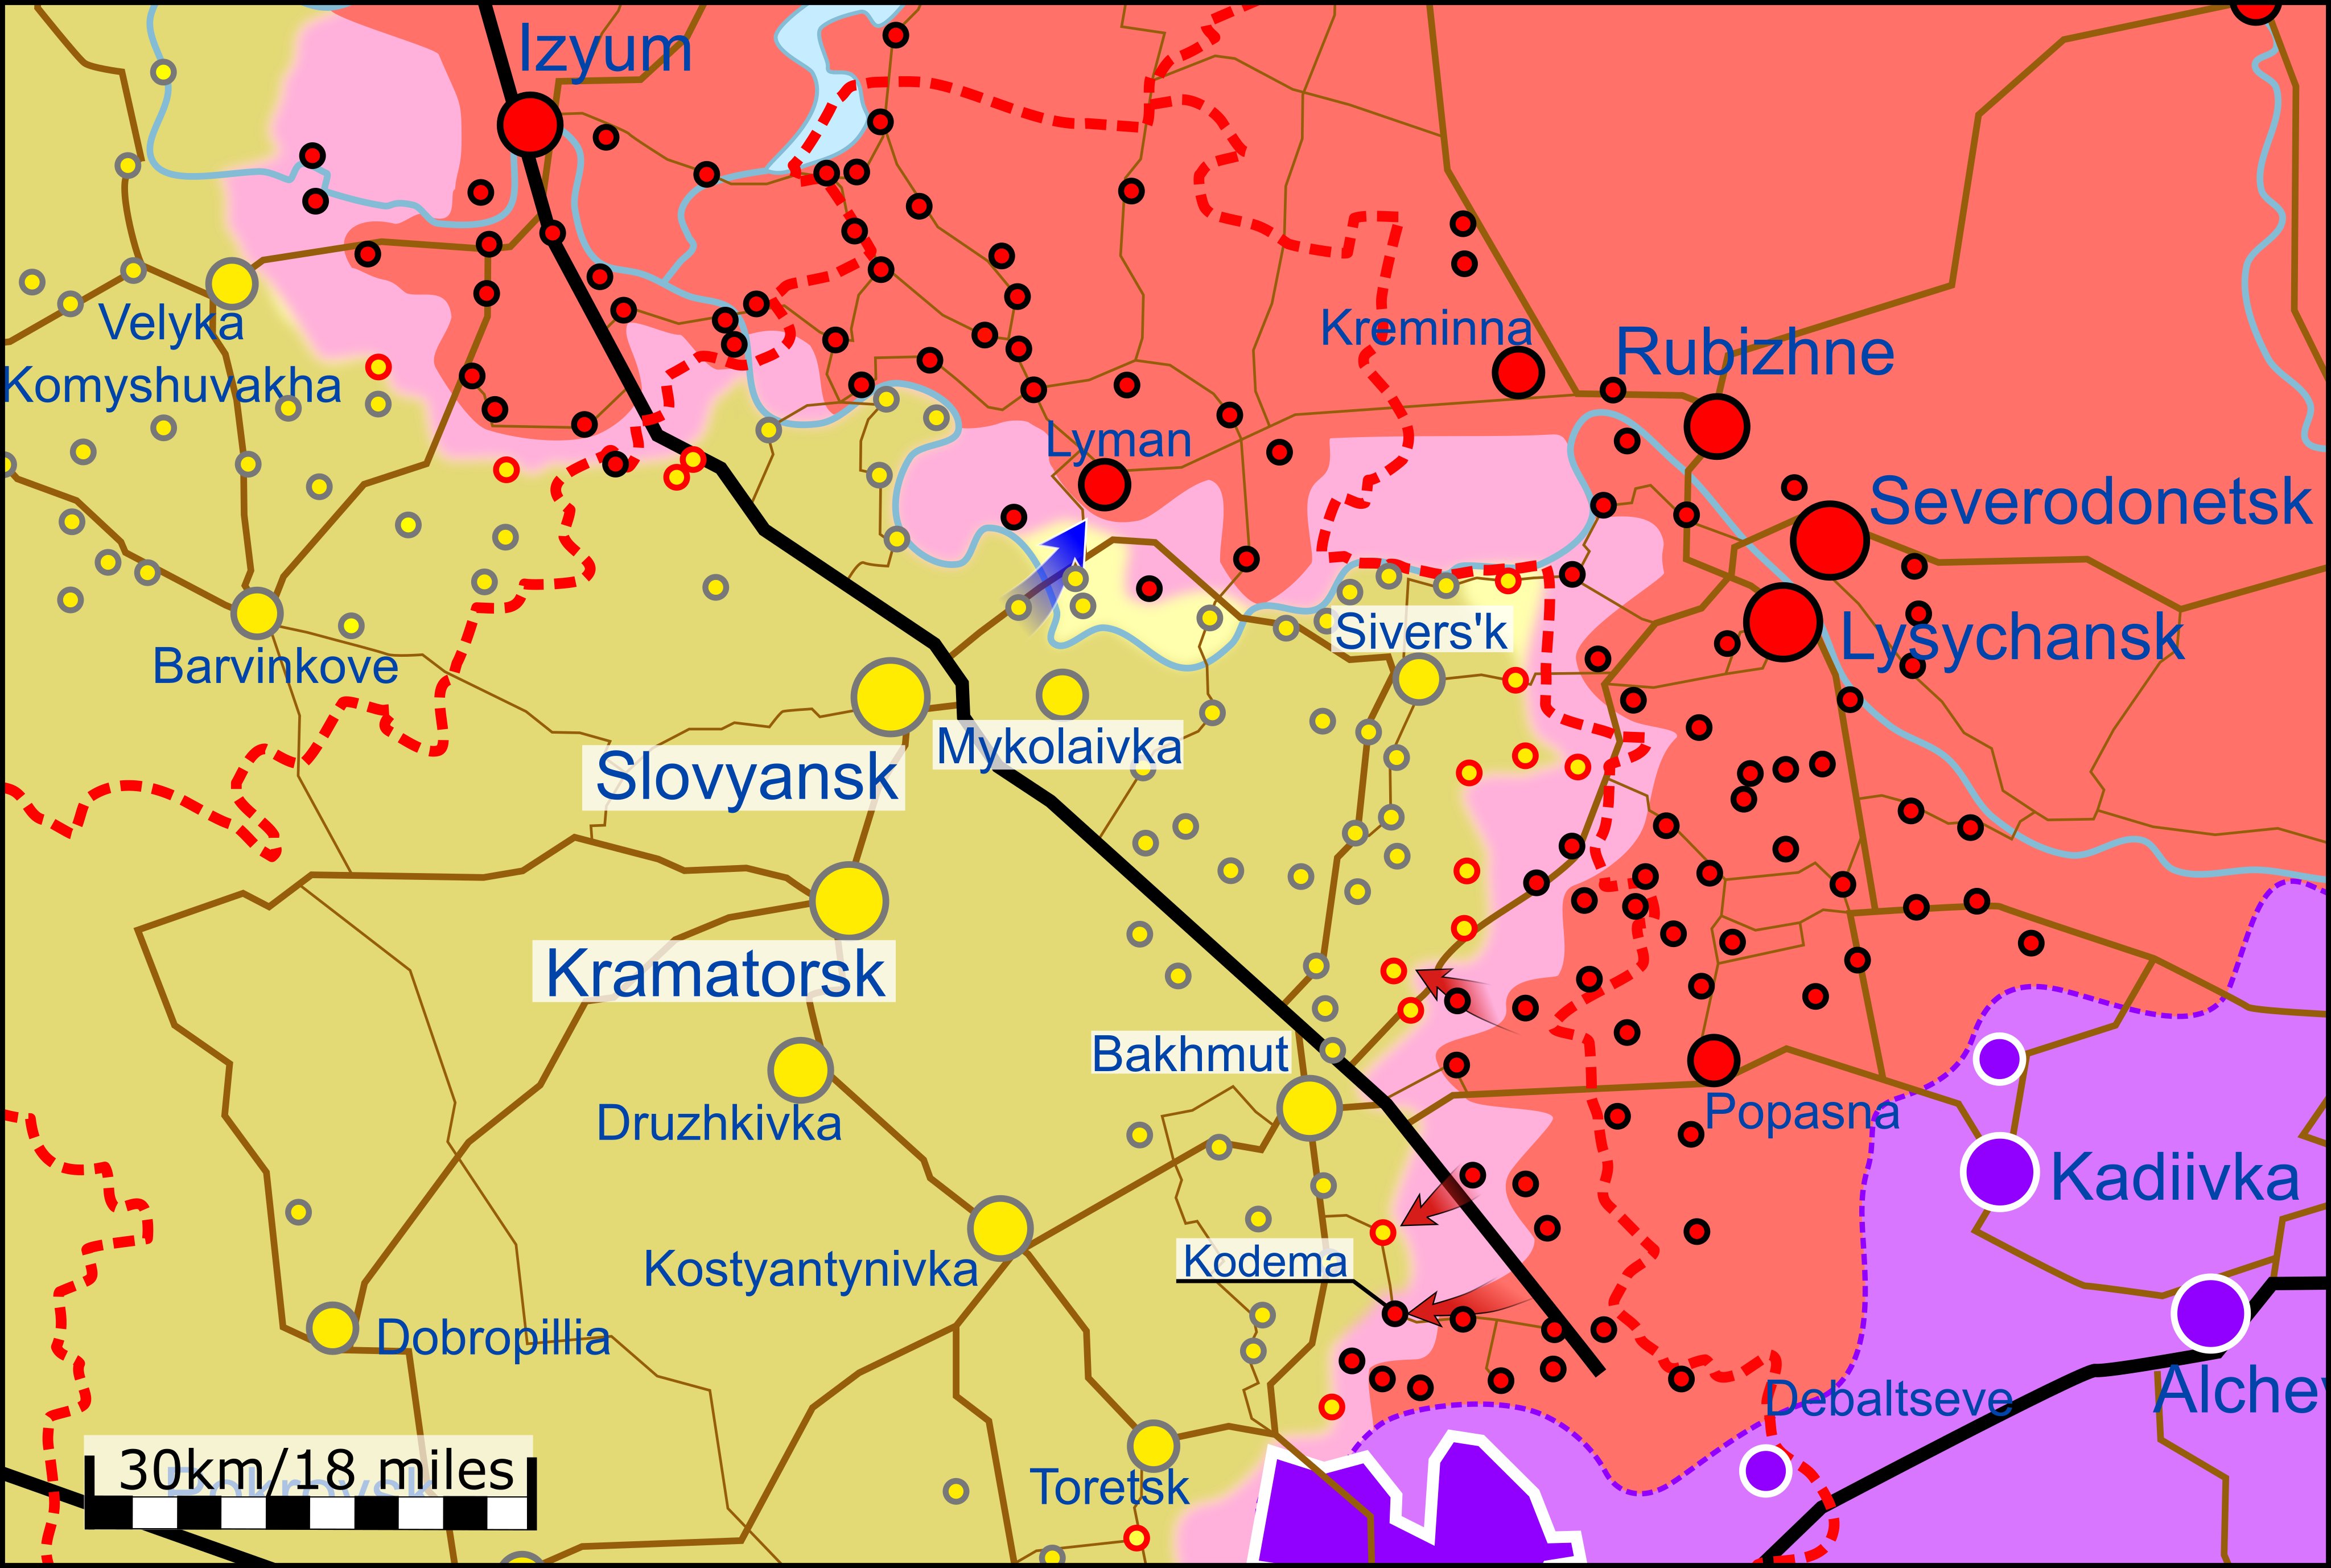 Обстановка на украине на сегодняшний день карта боевых действий новости на сегодня